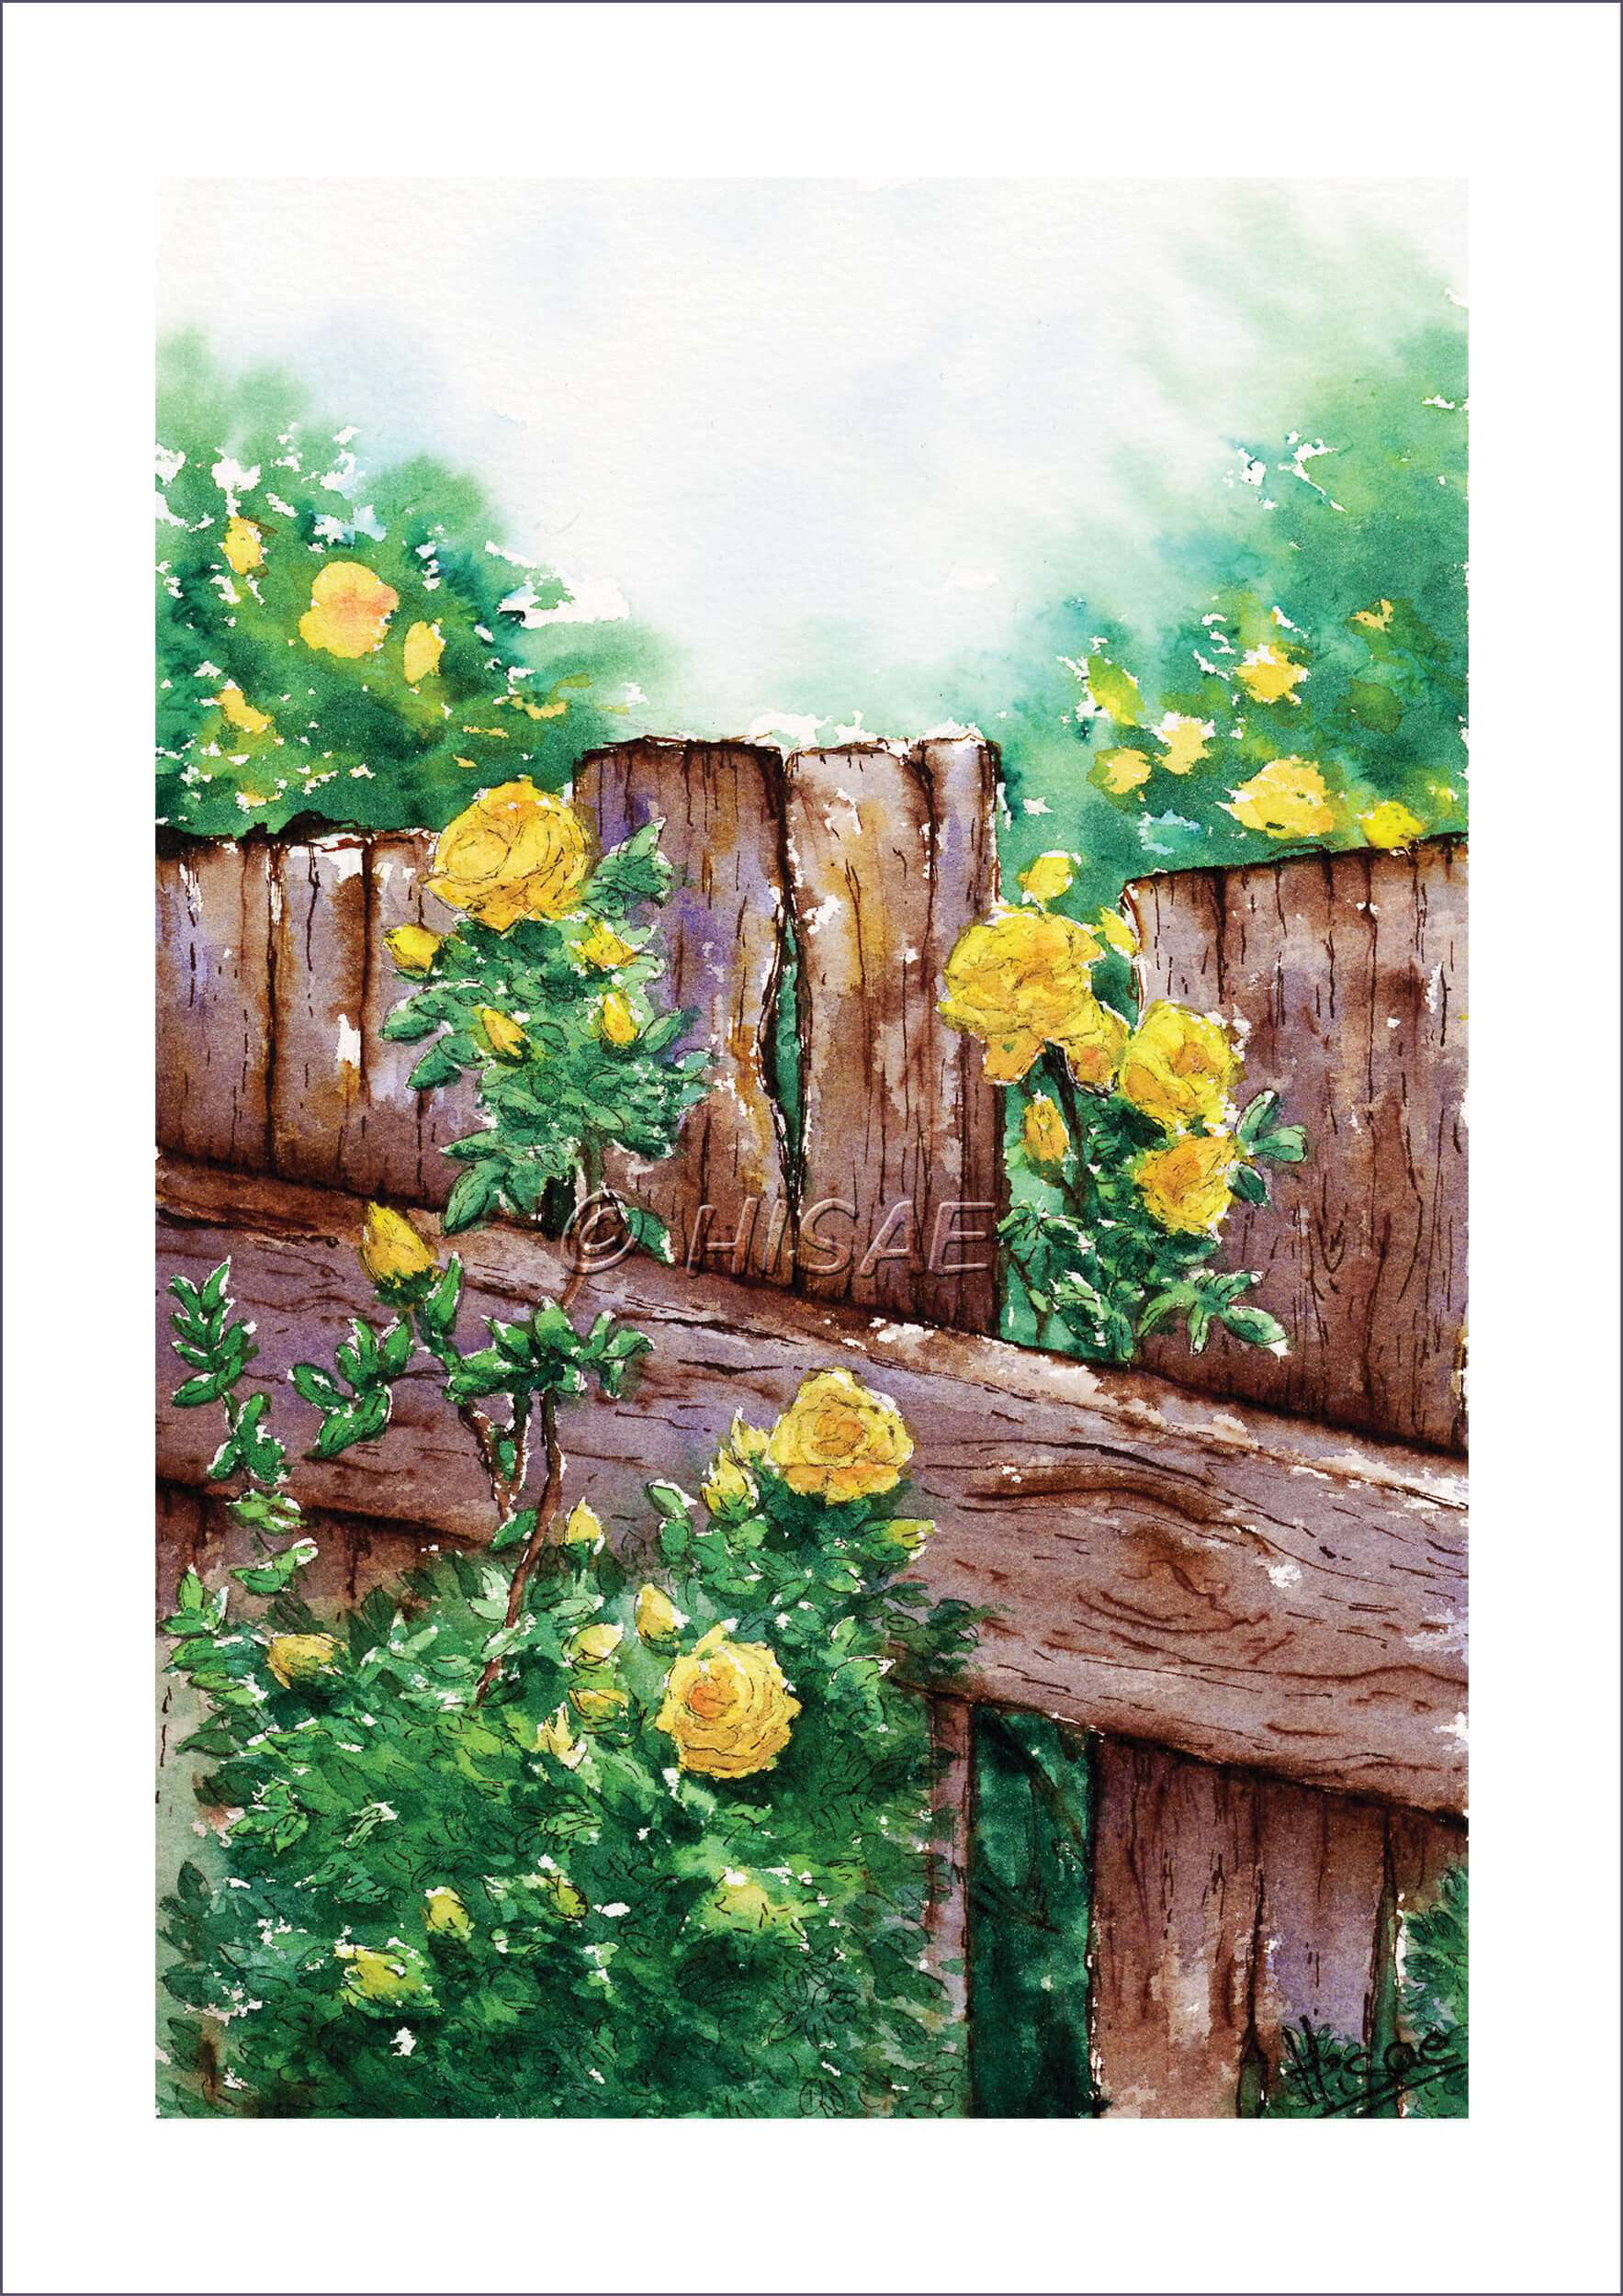 Impression format carte postale d'un dessin original réalisé à l'encre et à l'aquarelle représentant des roses jaunes grimpant le long d'une barrière en bois @Hisae illustration